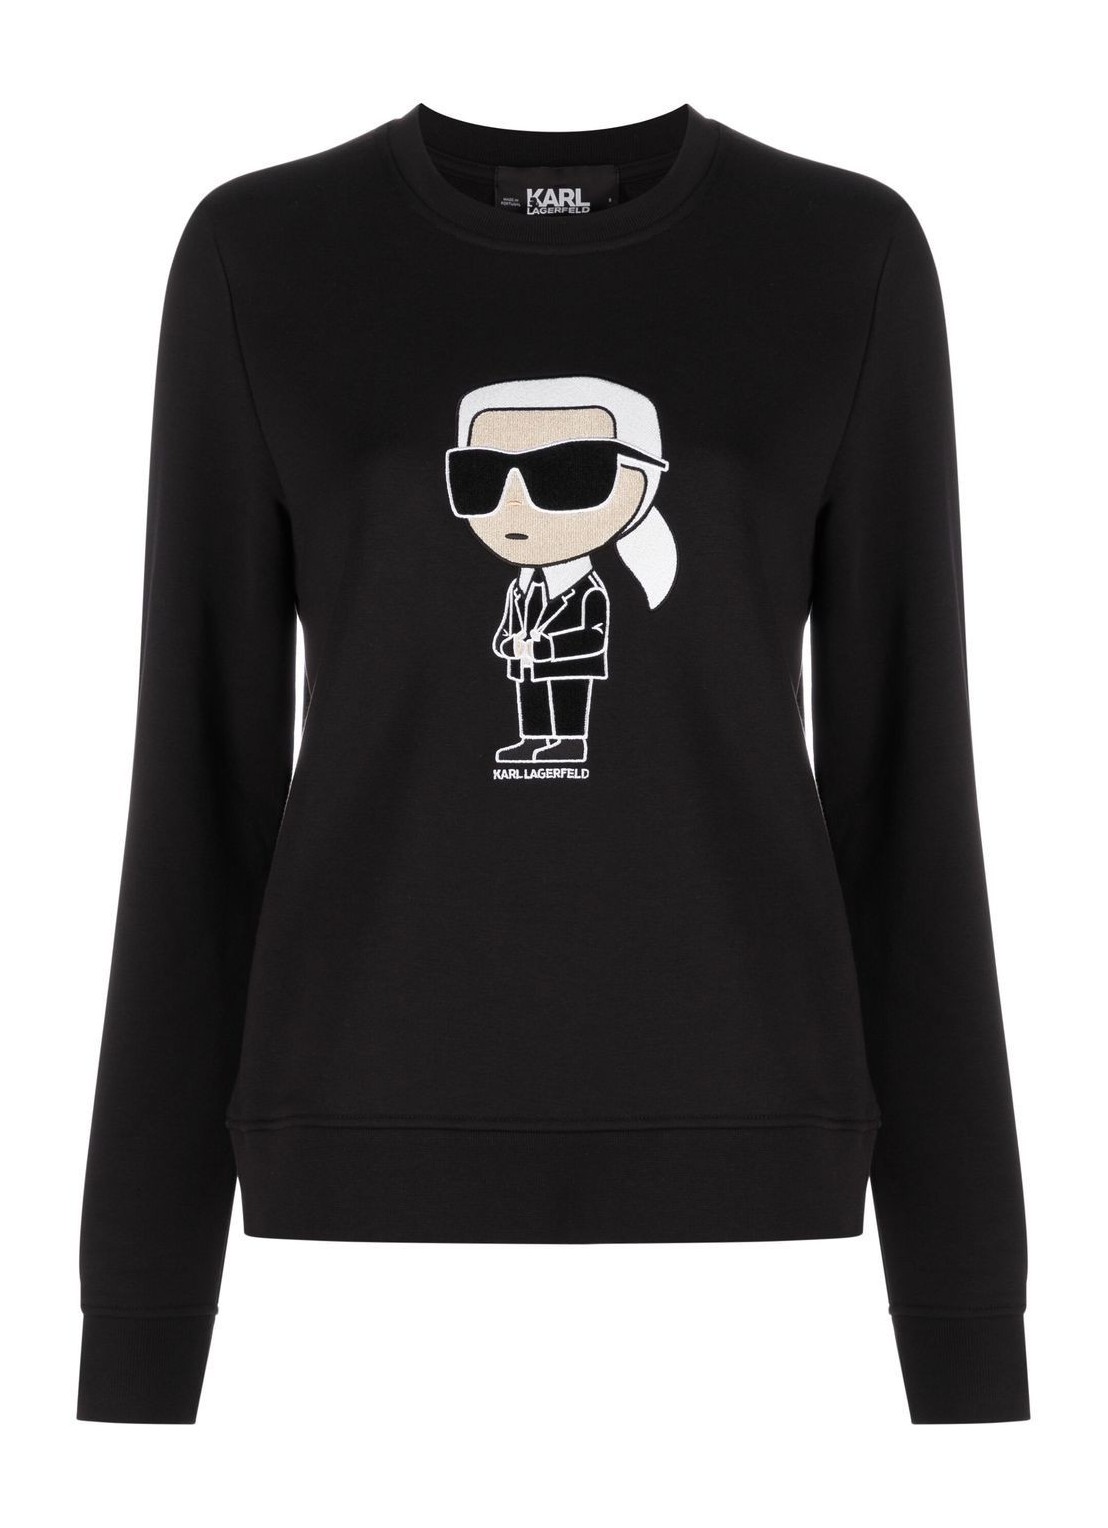 Sudadera karl lagerfeld sweater woman ikonik 2.0 karl sweatshirt 230w1800 999 talla XL
 